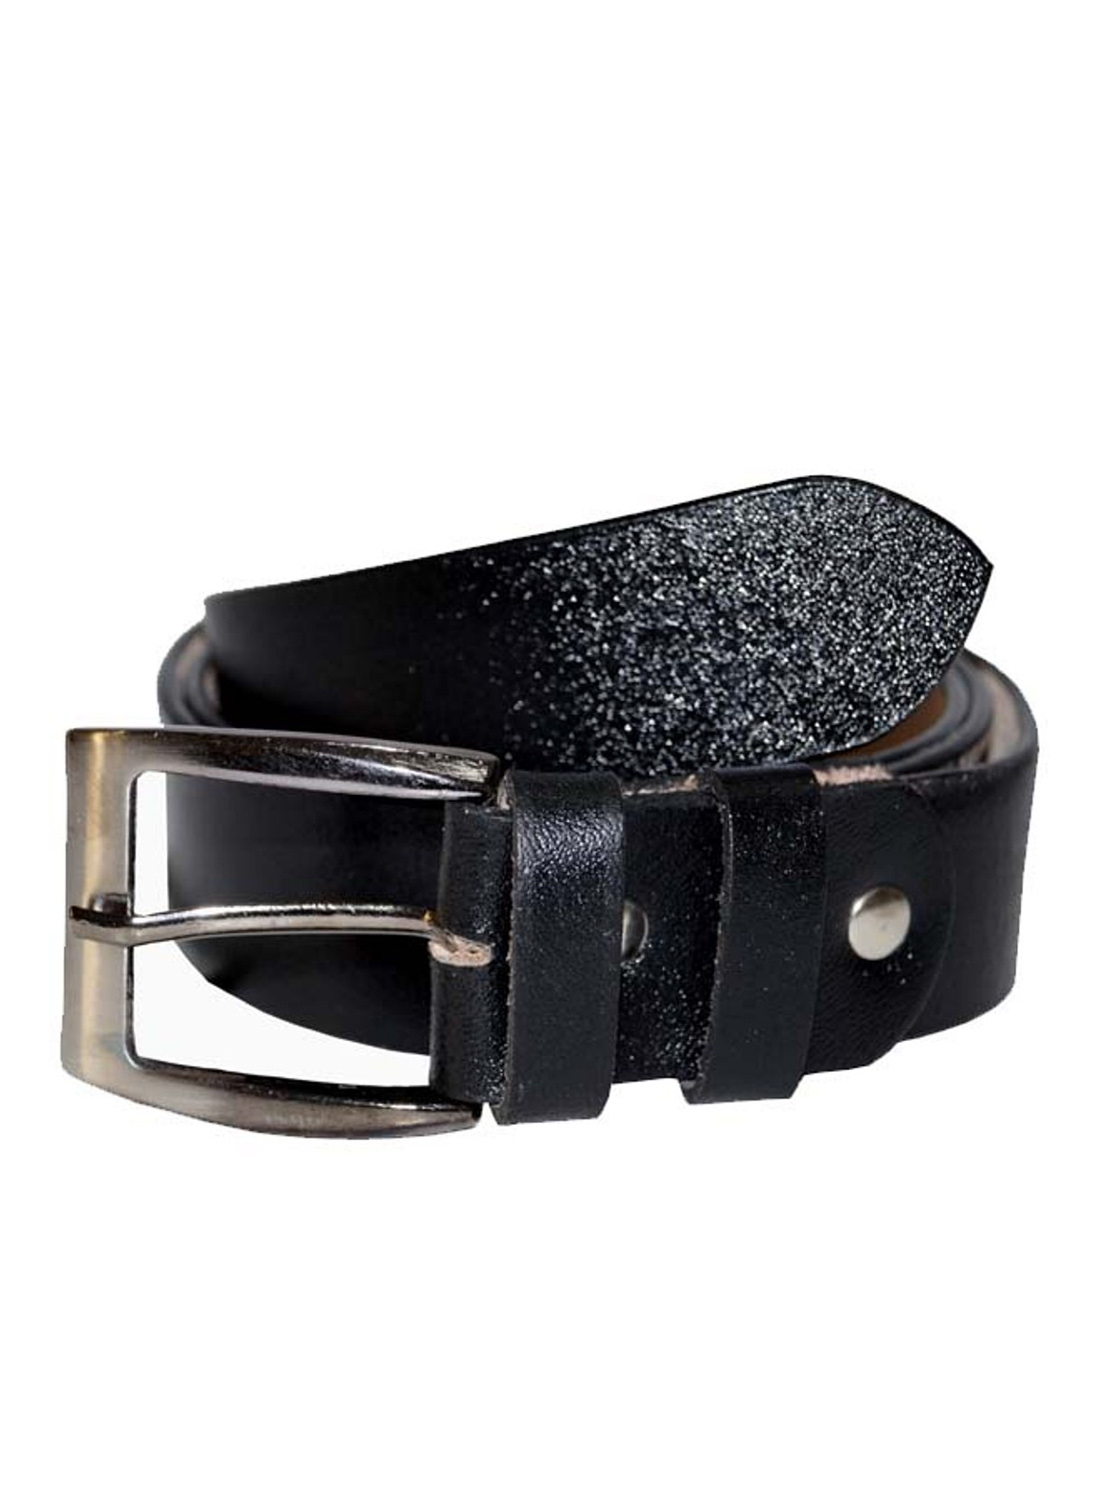 Fashion :: Accessories :: Belts :: Best Seller Formal Leather Mens Belt (Black) - www.lvbagssale.com